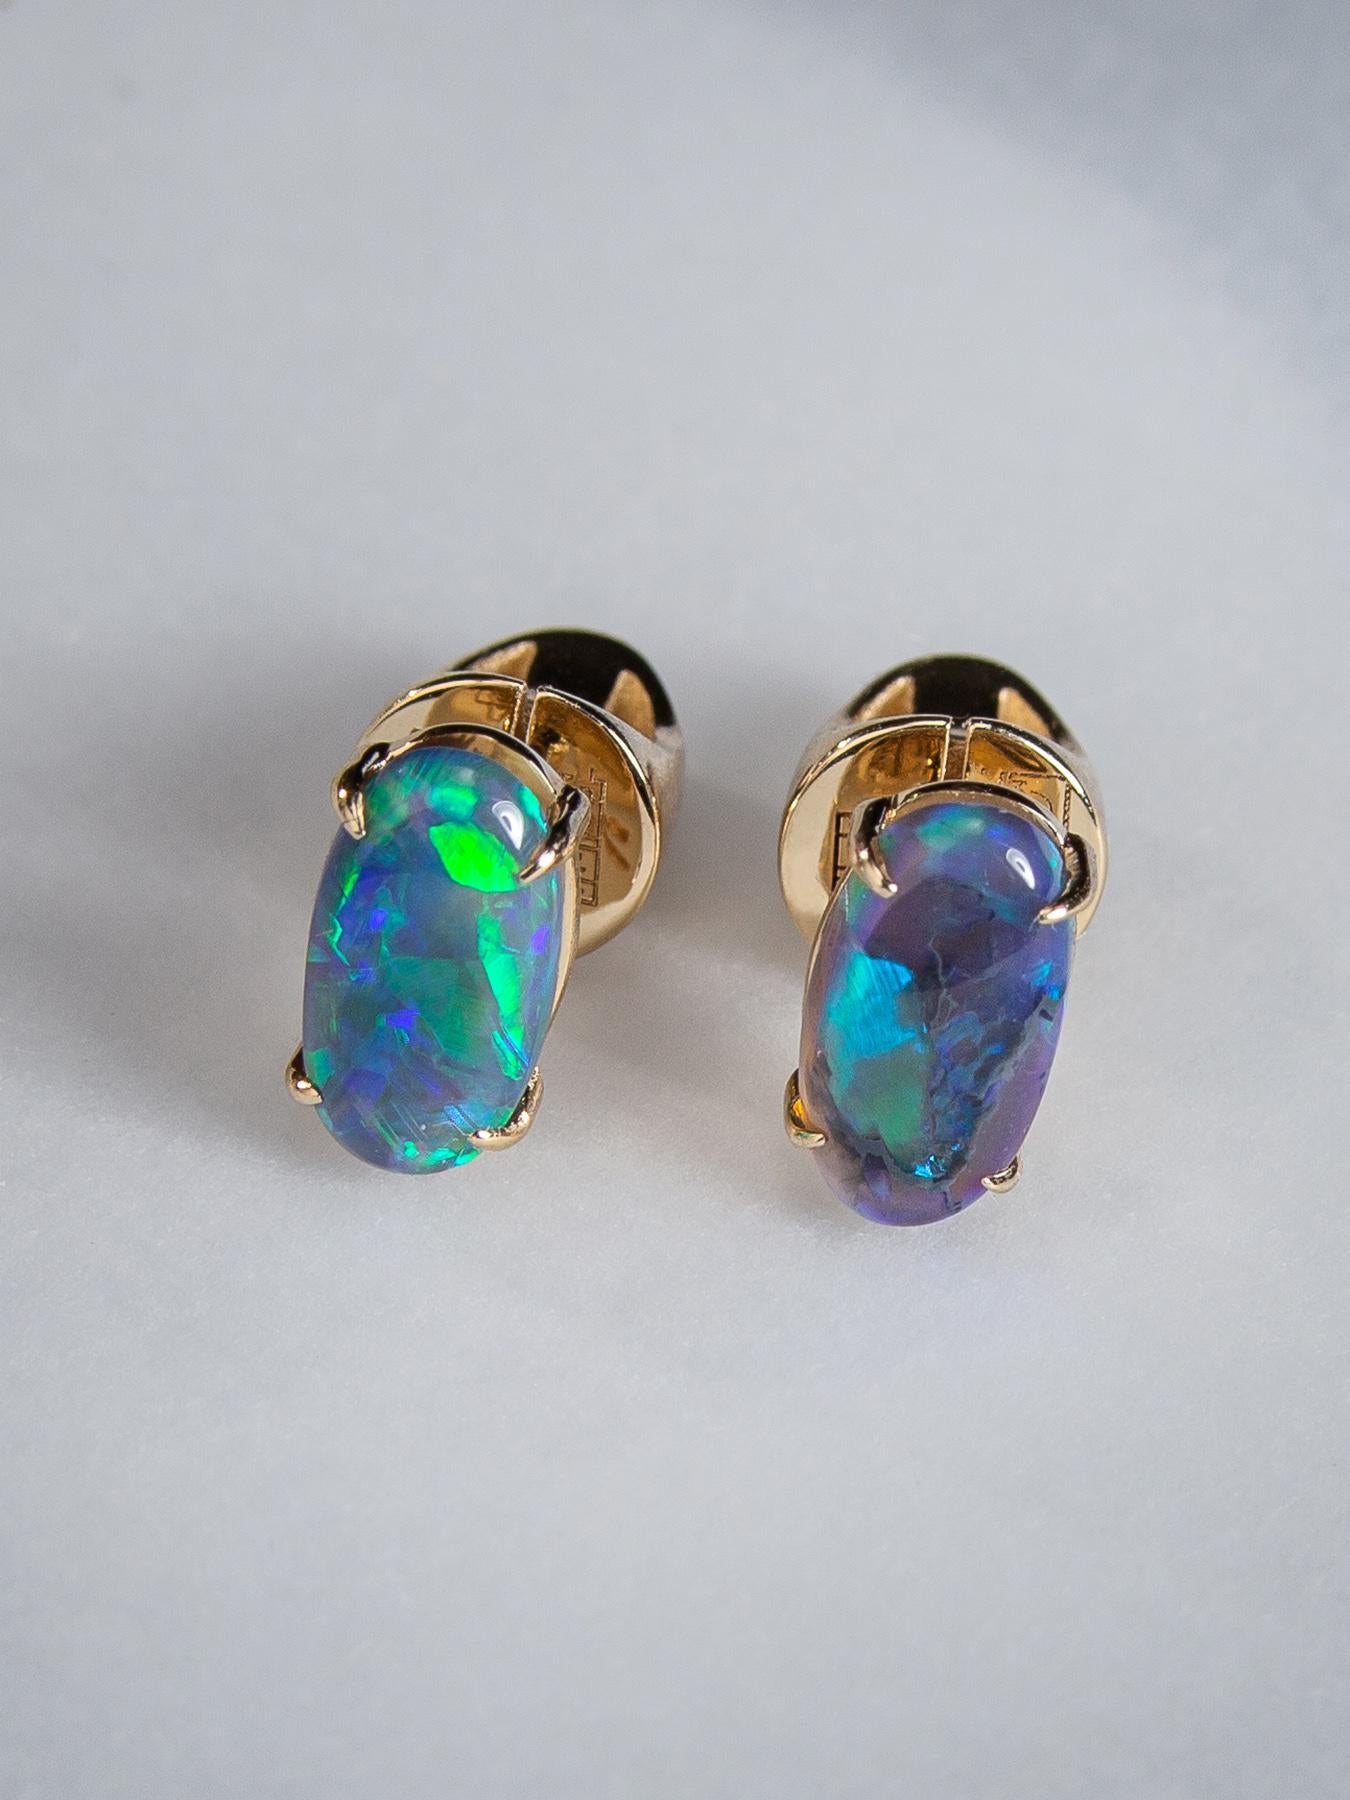 Black opal stud earrings earrings in 14k yellow gold 
opal origin - Australia
stone measurements 0.079 x 0.16 x 0.35 in /  2 х 4 х 9 mm
earrings weight - 2.75 grams
opals weight - 1.35 carats